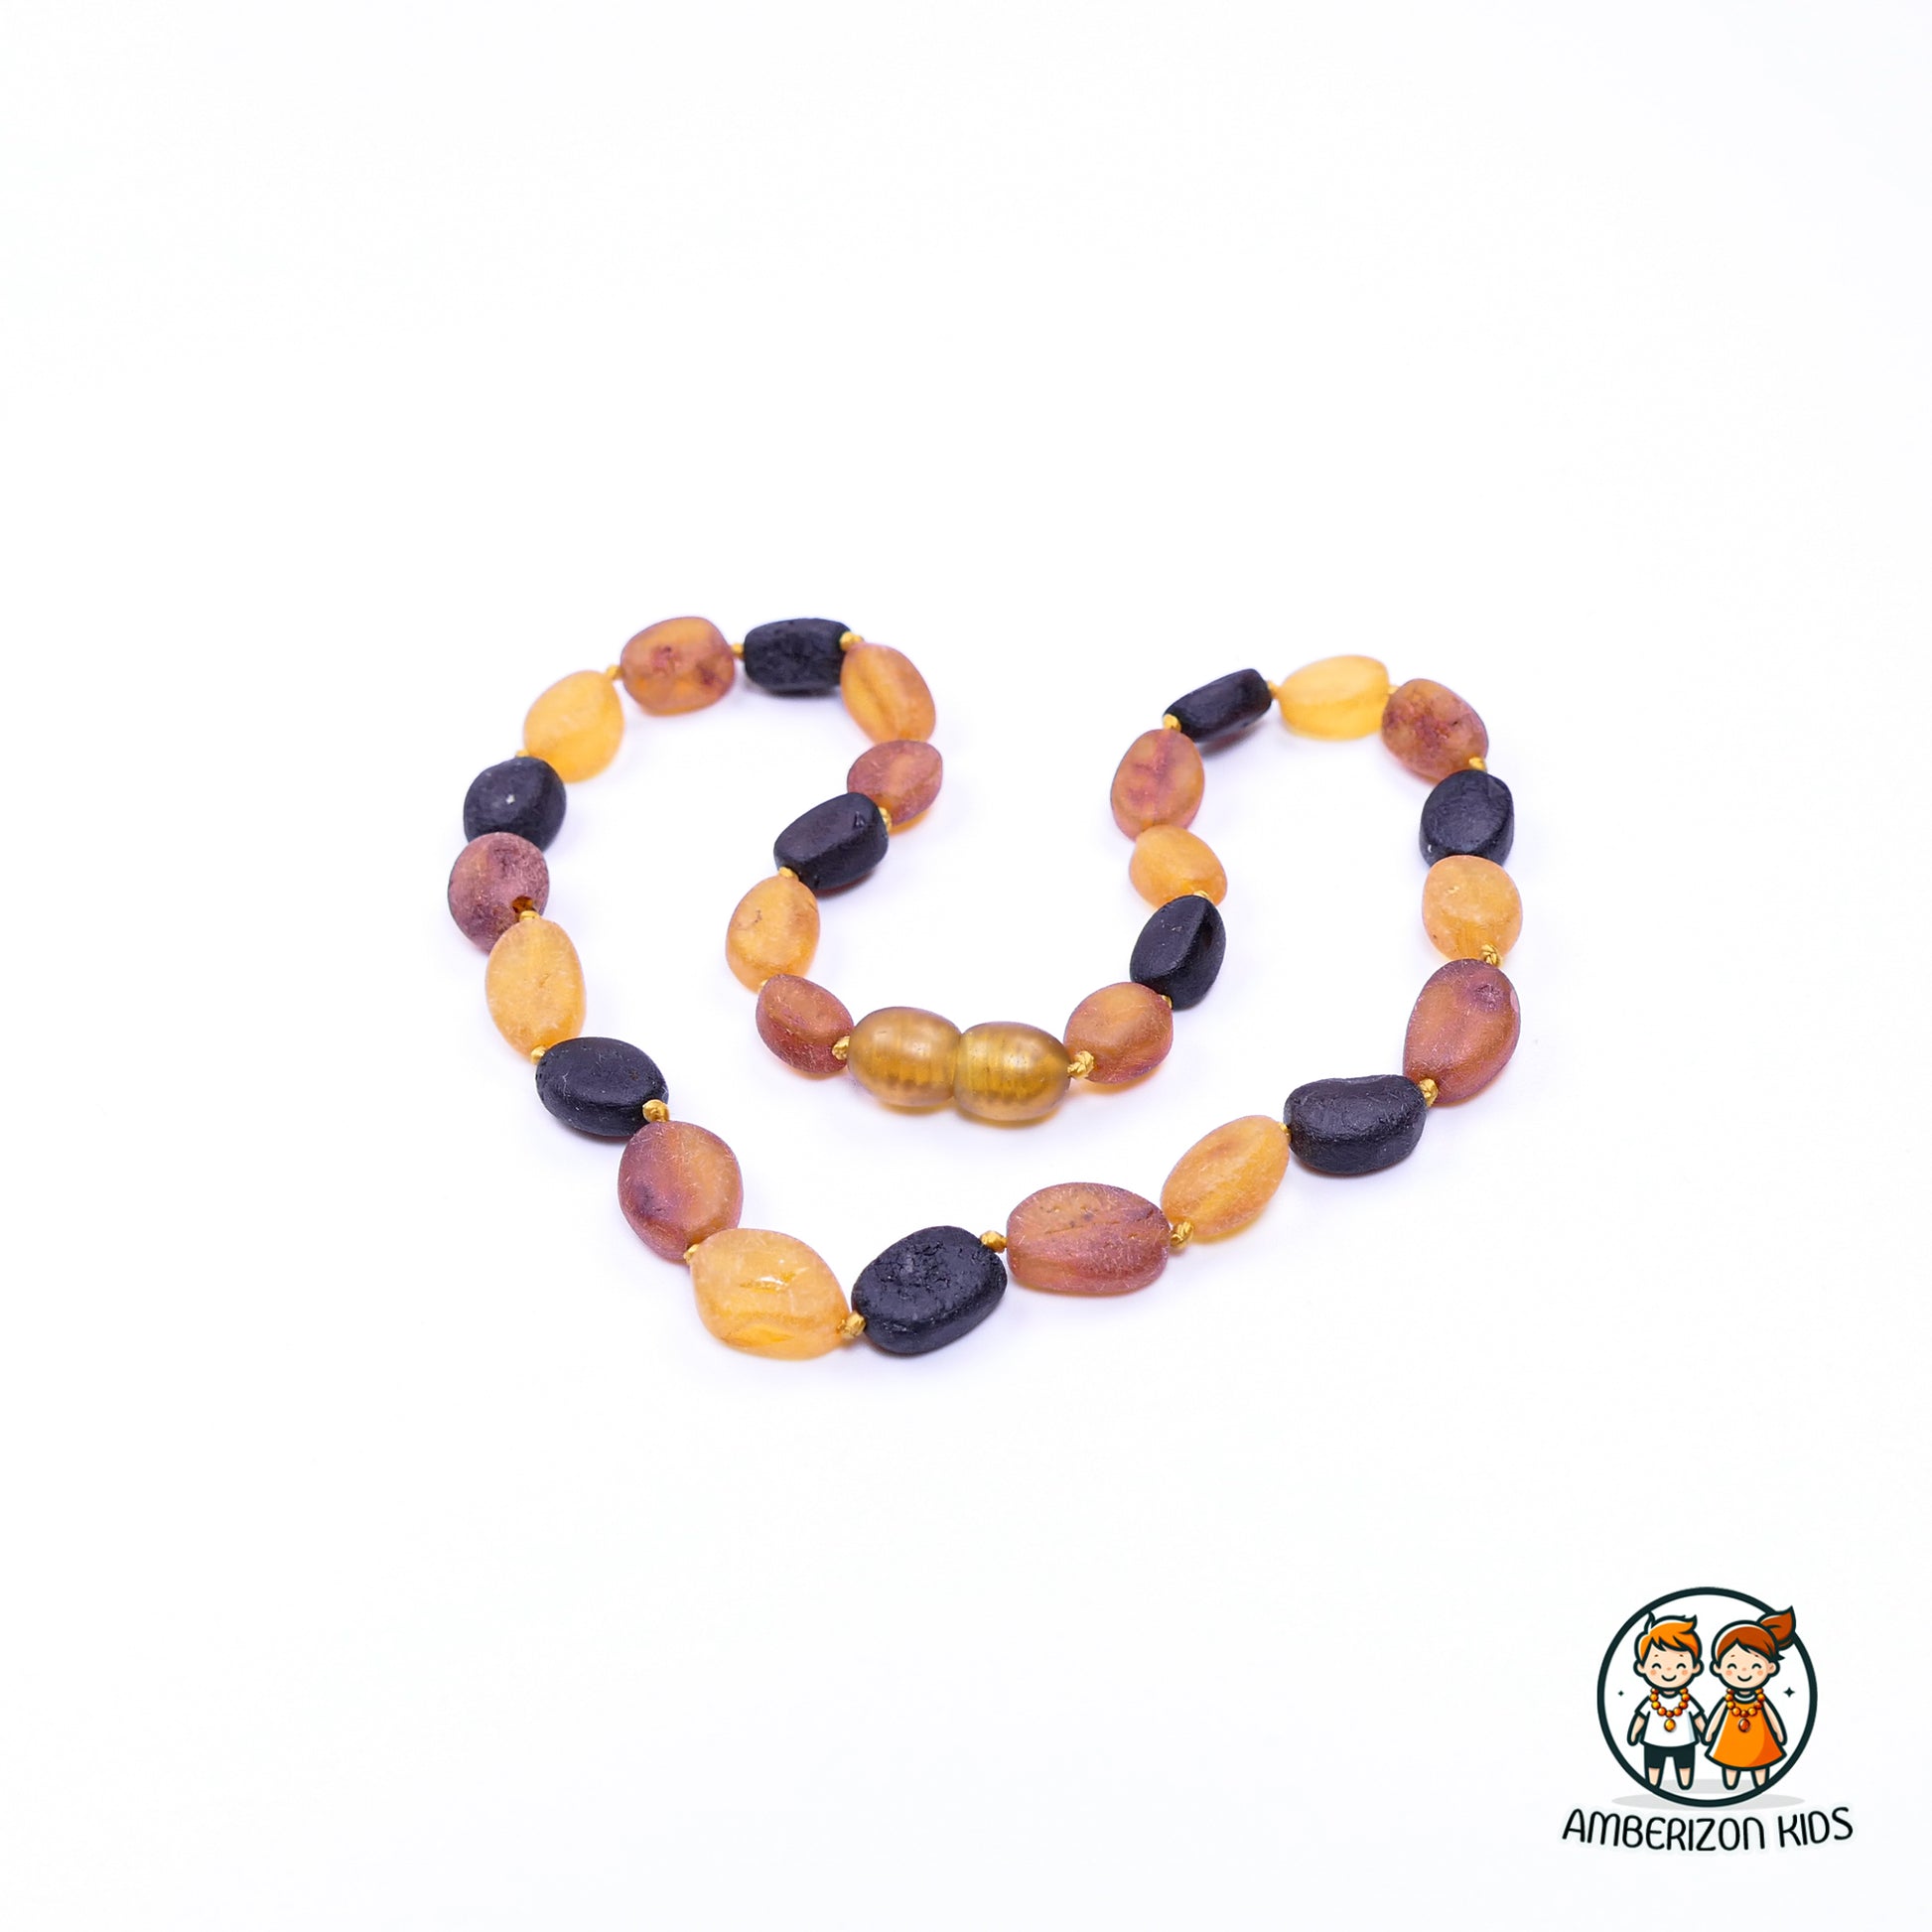 Raw amber multicolored baby necklace - Unisex - Unpolished flat olive shape beads